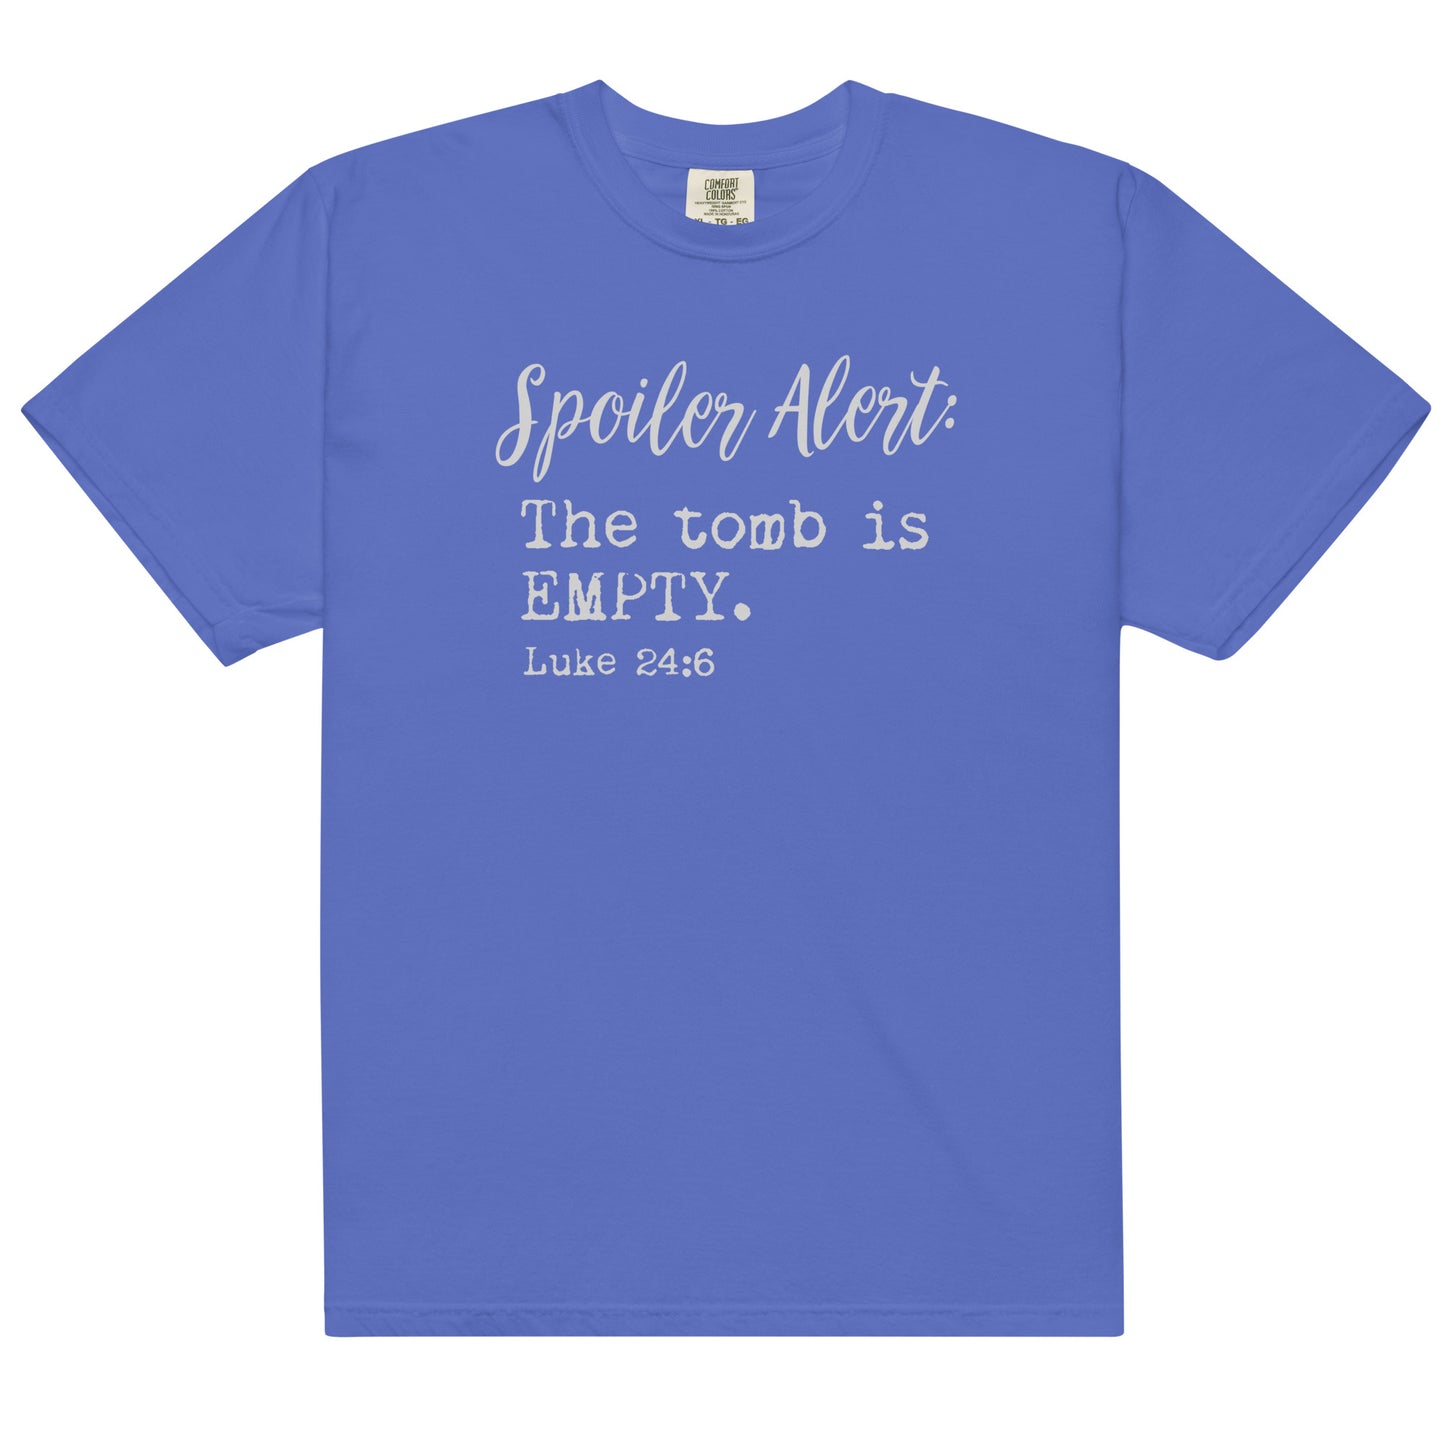 Super popular soft unisex garment-dyed heavyweight t-shirt